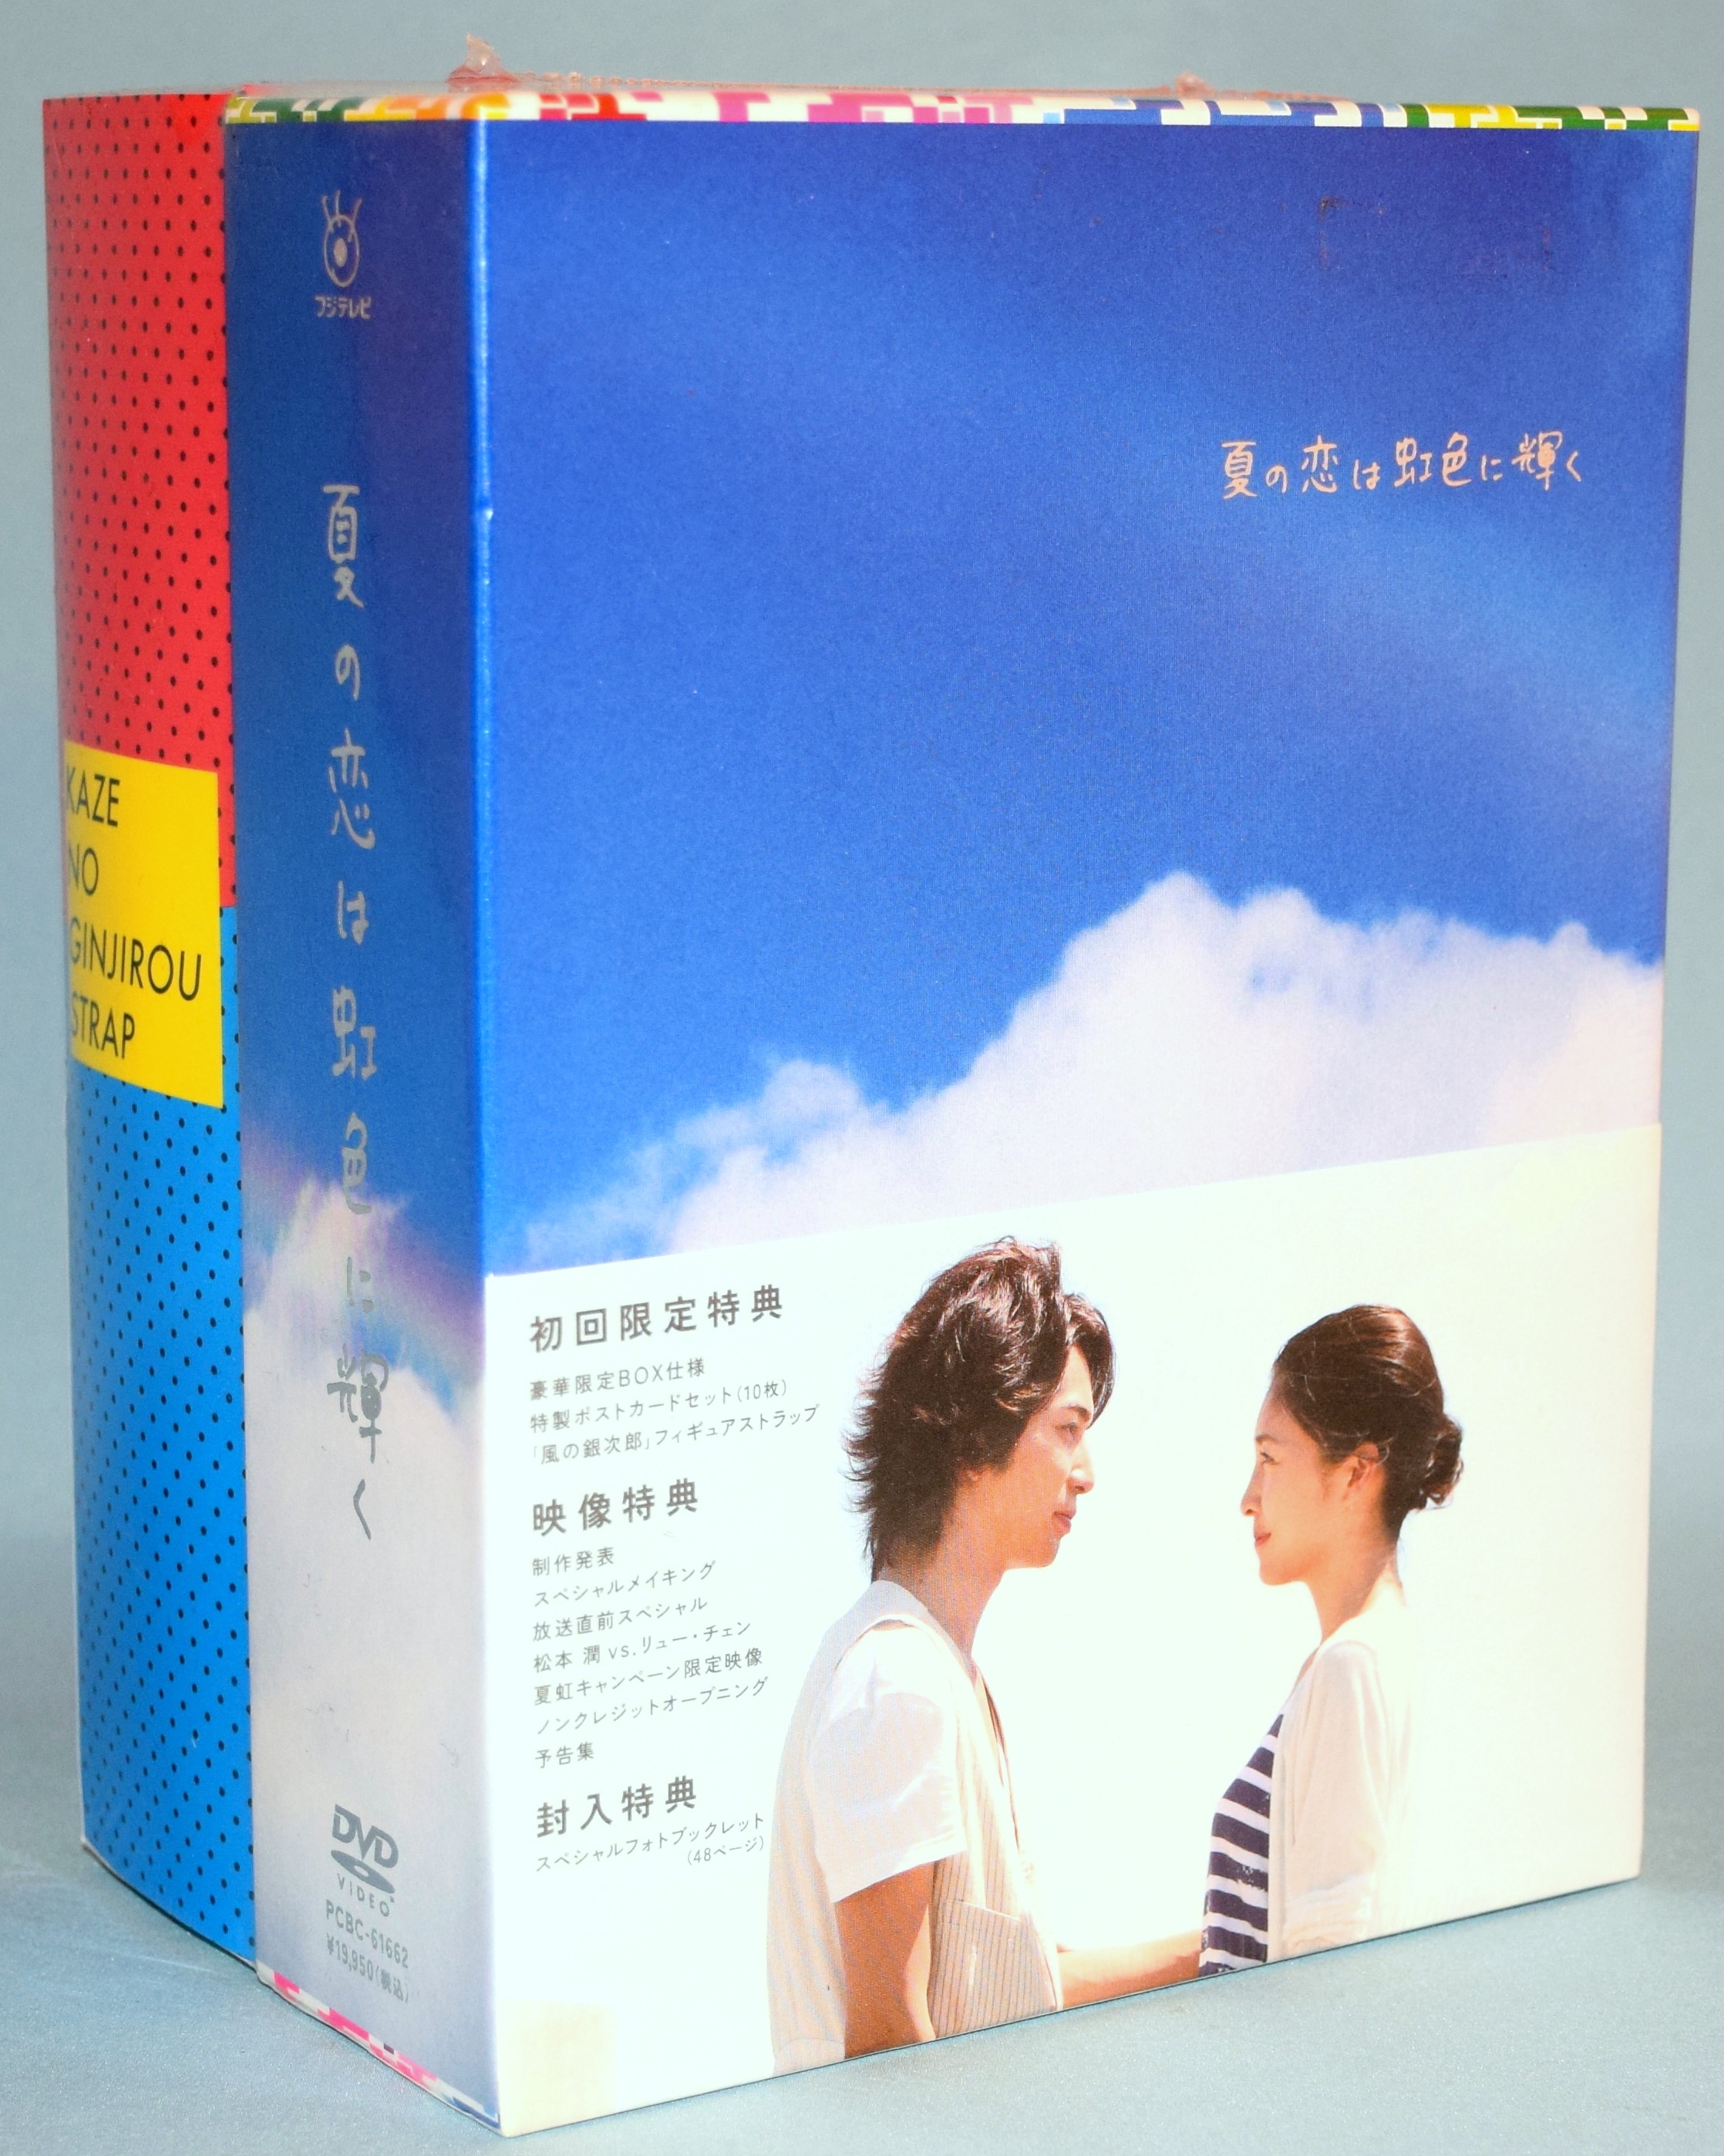 夏の恋は虹色に輝く　DVD-BOX DVD初回限定特典付き新品未開封です。